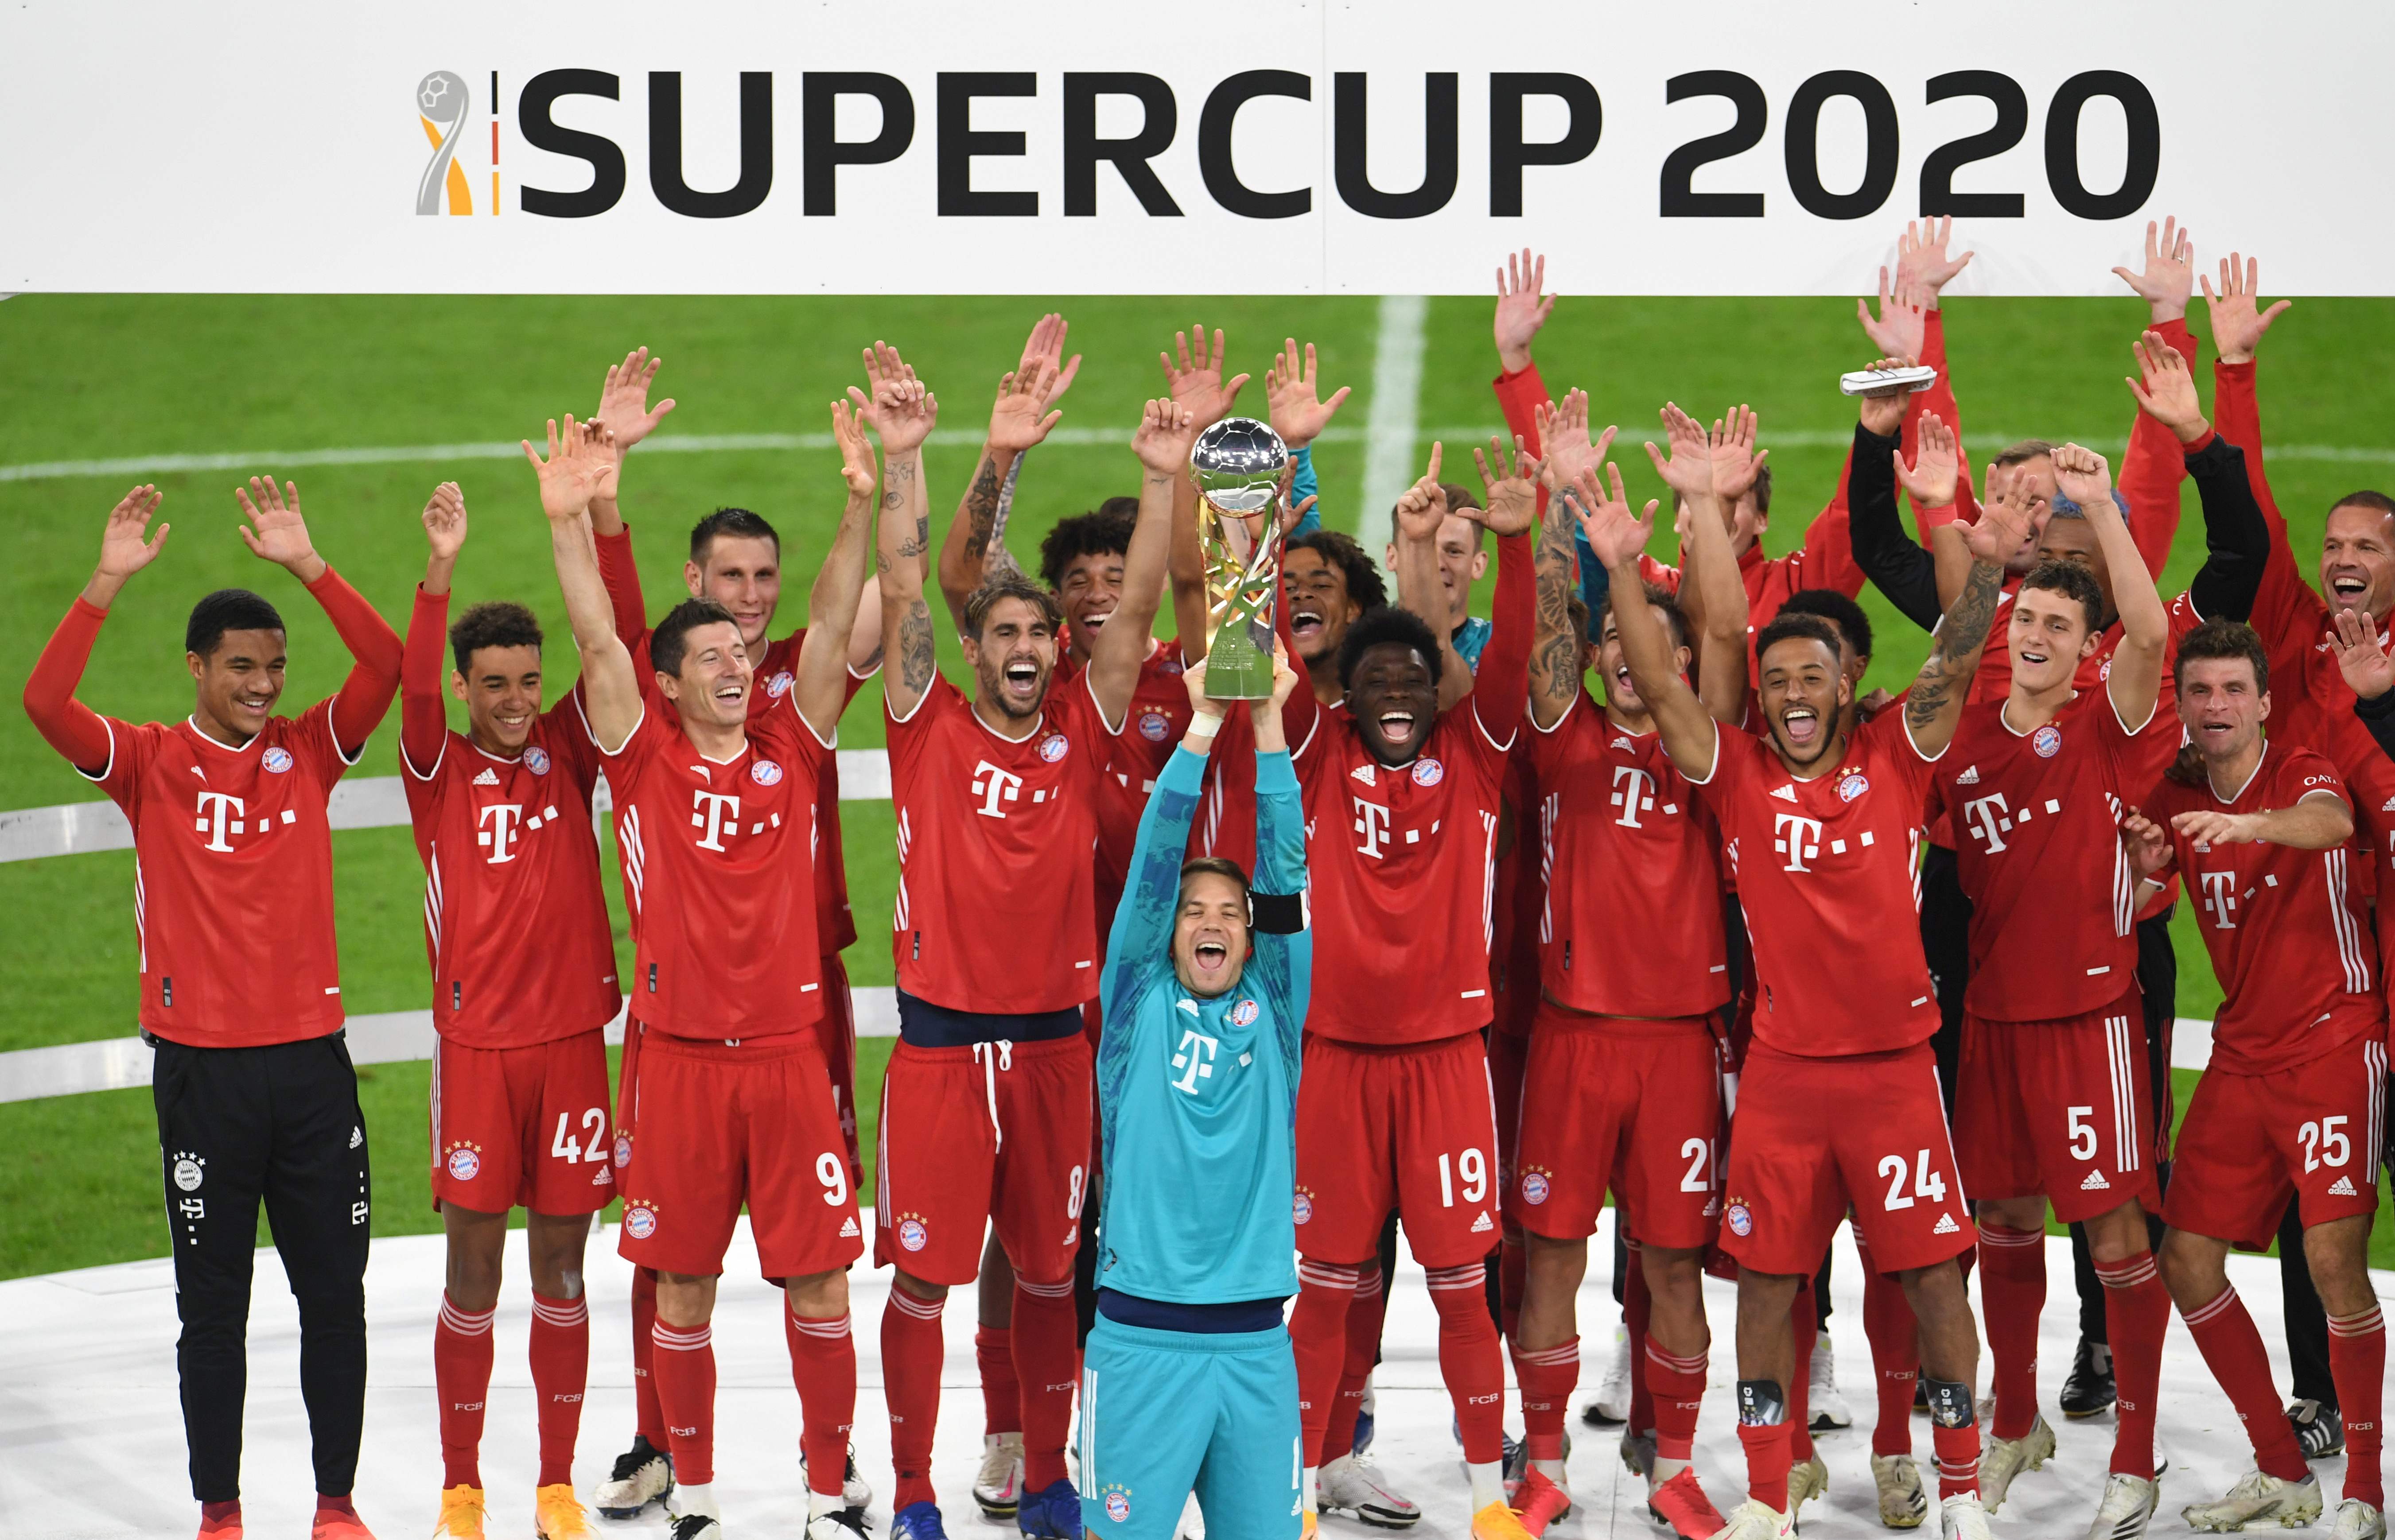 在2020年，拜仁慕尼黑已赢得德甲、德国杯、欧冠、欧洲超级杯、德国超级杯共5个冠军。这亦是拜仁第8次赢得德超杯。图为诺伊尔（中）和队友一起捧杯庆祝。（法新社照片）

